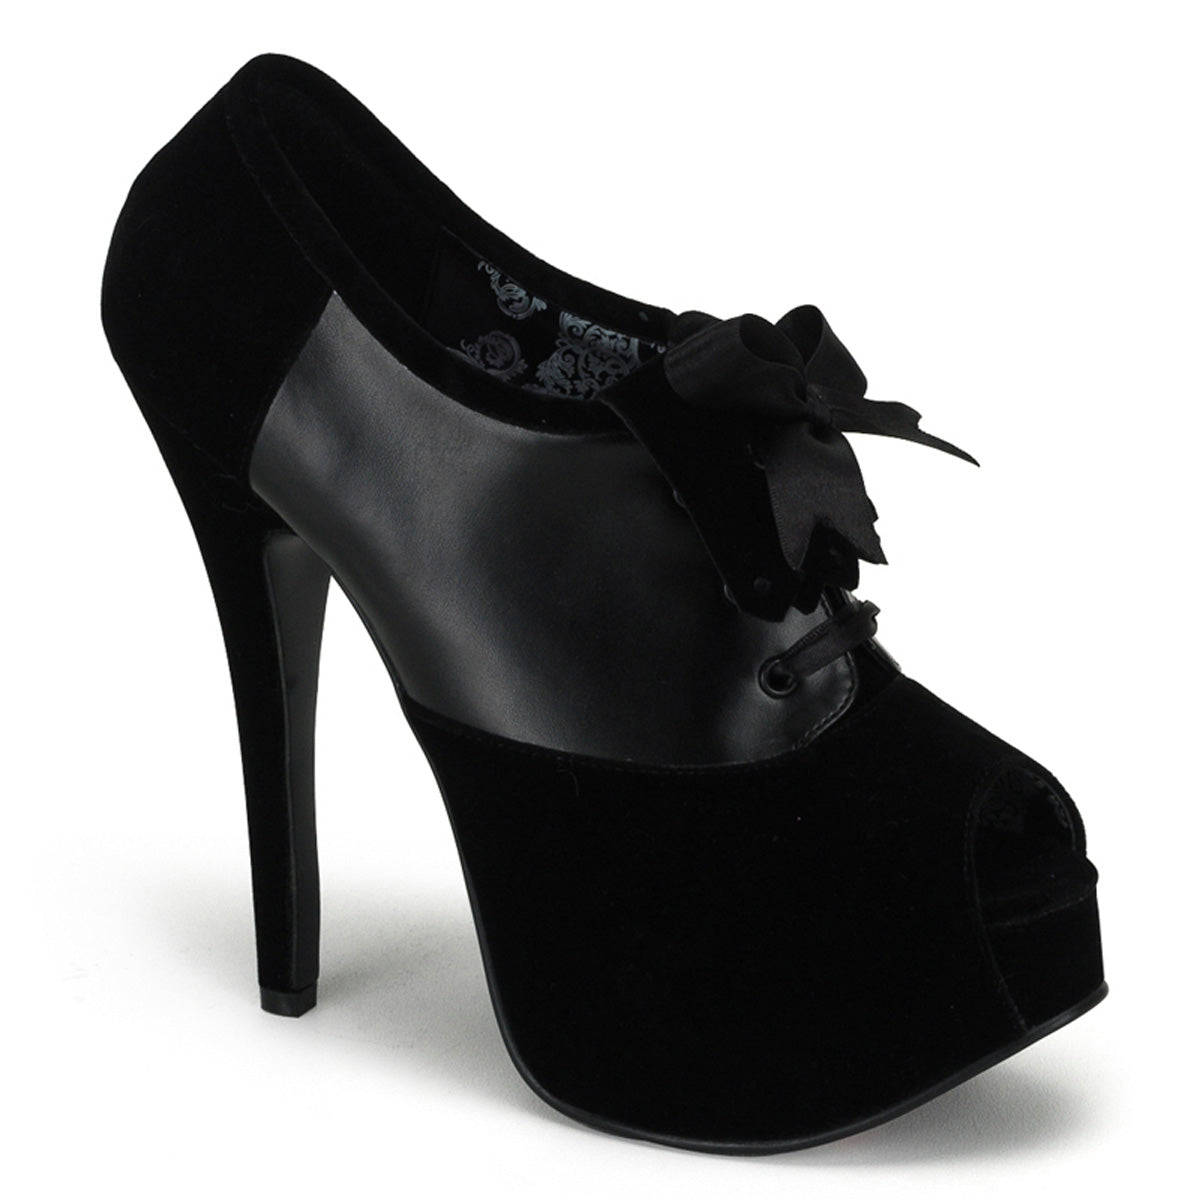 TEEZE-16 Hidden Platform High Heel Black Velvet Sexy Shoes